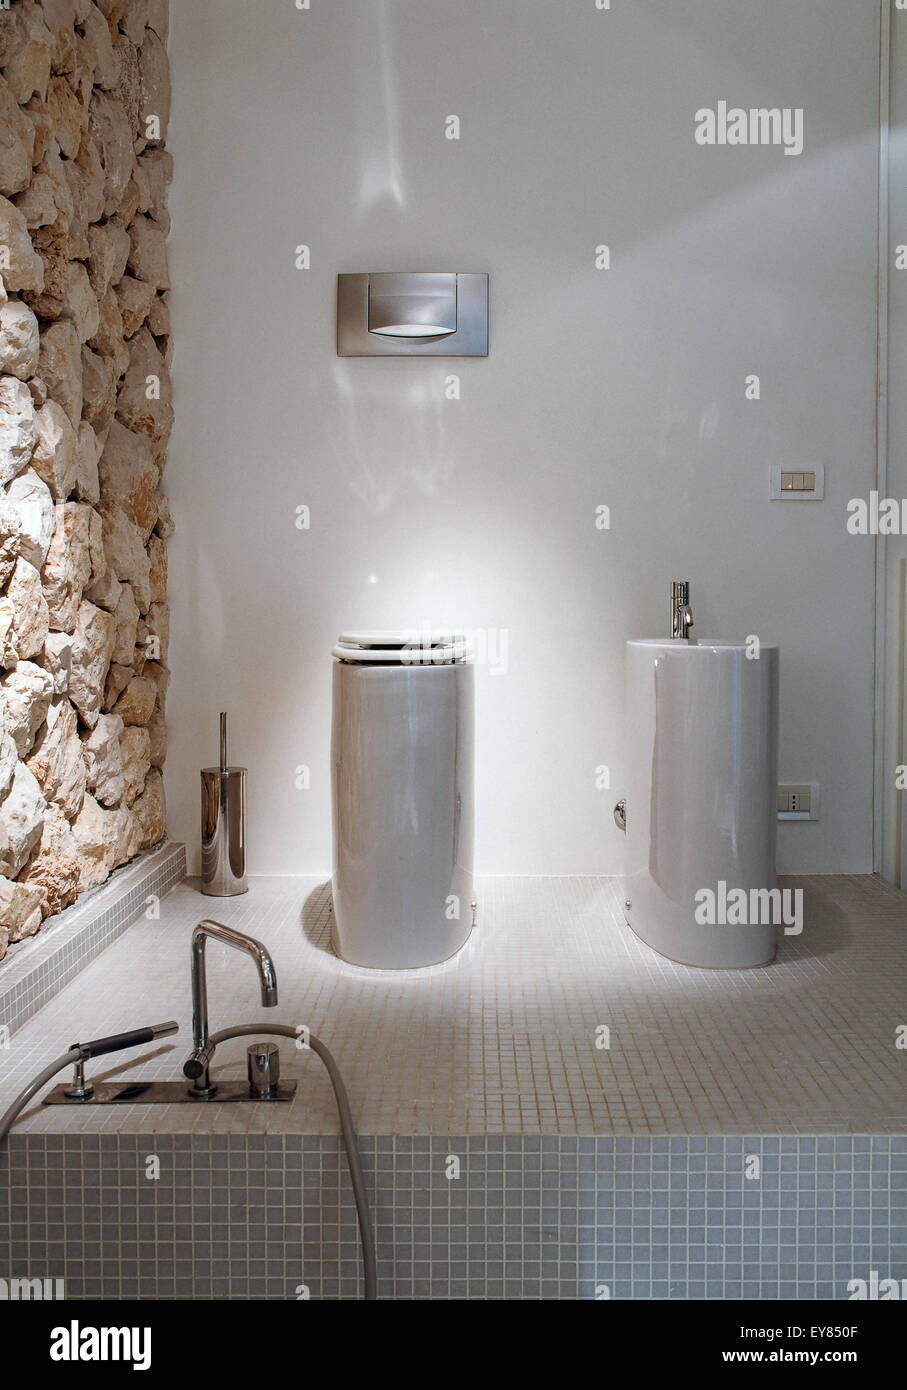 Detalle de la porcelana sanitaria en el baño moderno cuyo piso está revestido con mosaicos en primer plano el grifo de la bañera Foto de stock